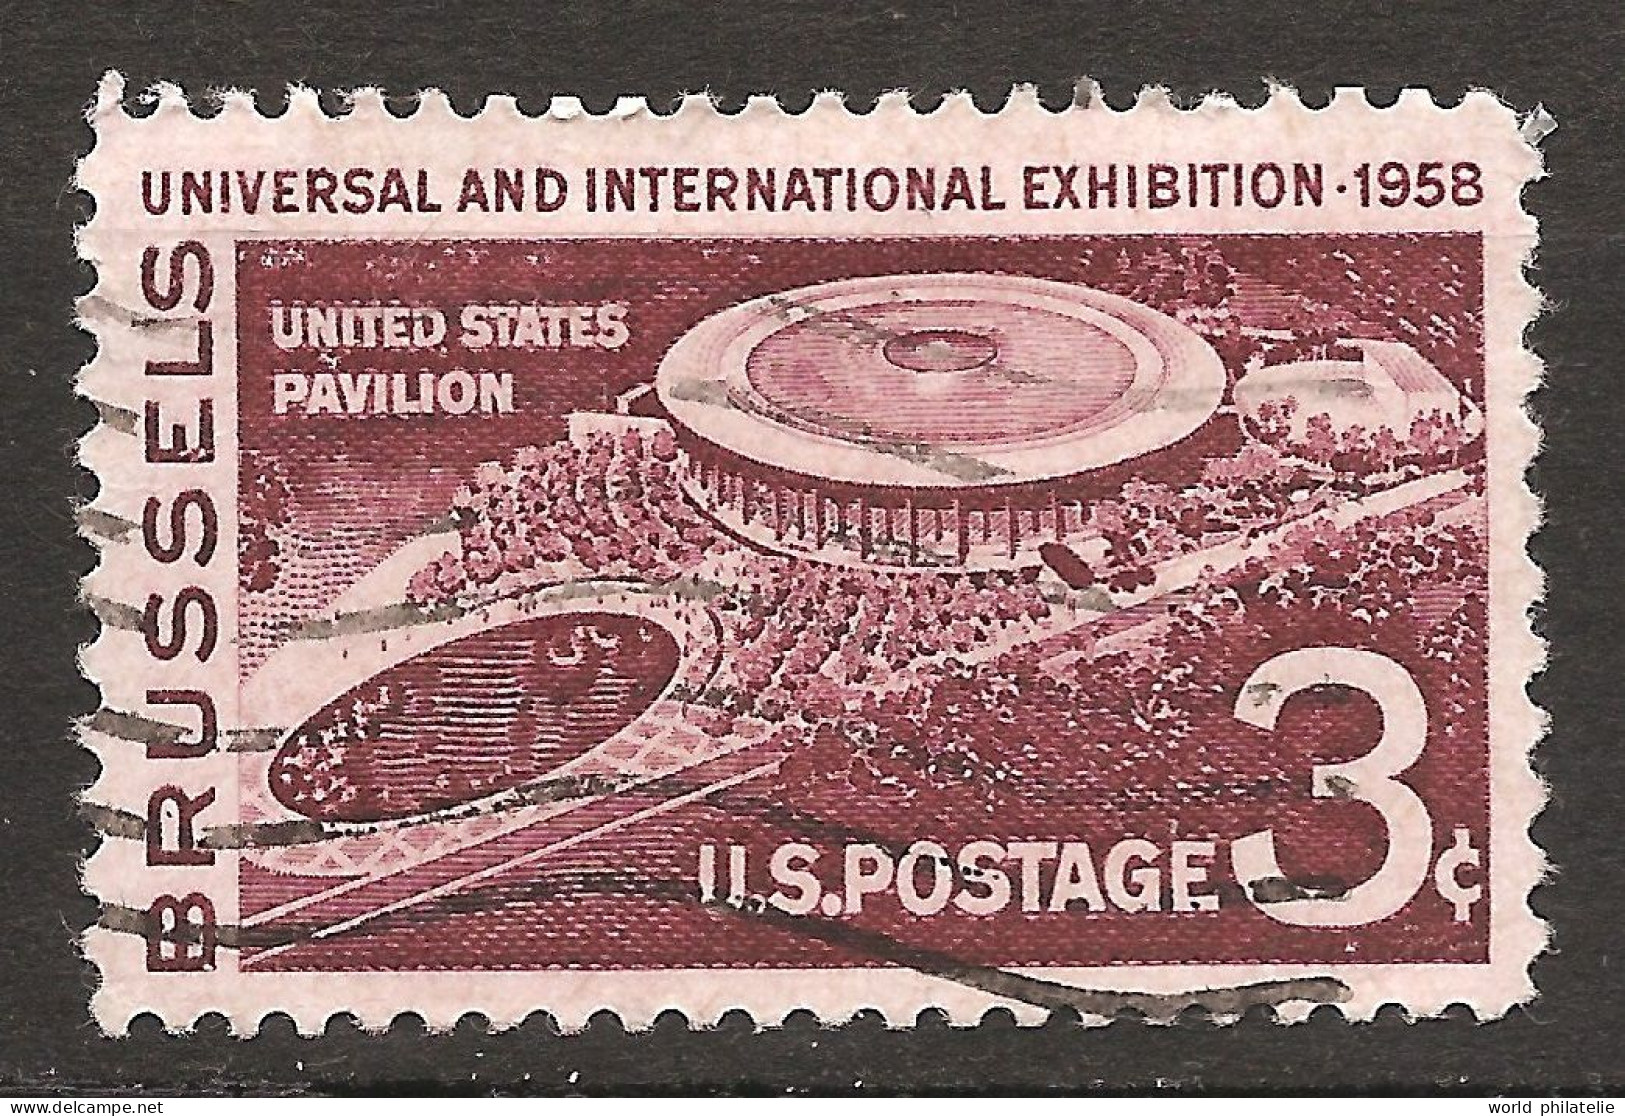 Etats-Unis D'Amérique USA 1958 N° 638 O Exposition Universelle, Bruxelles, Pavillon, Heysel, Orchestre, Disney, Cinéma - Gebraucht